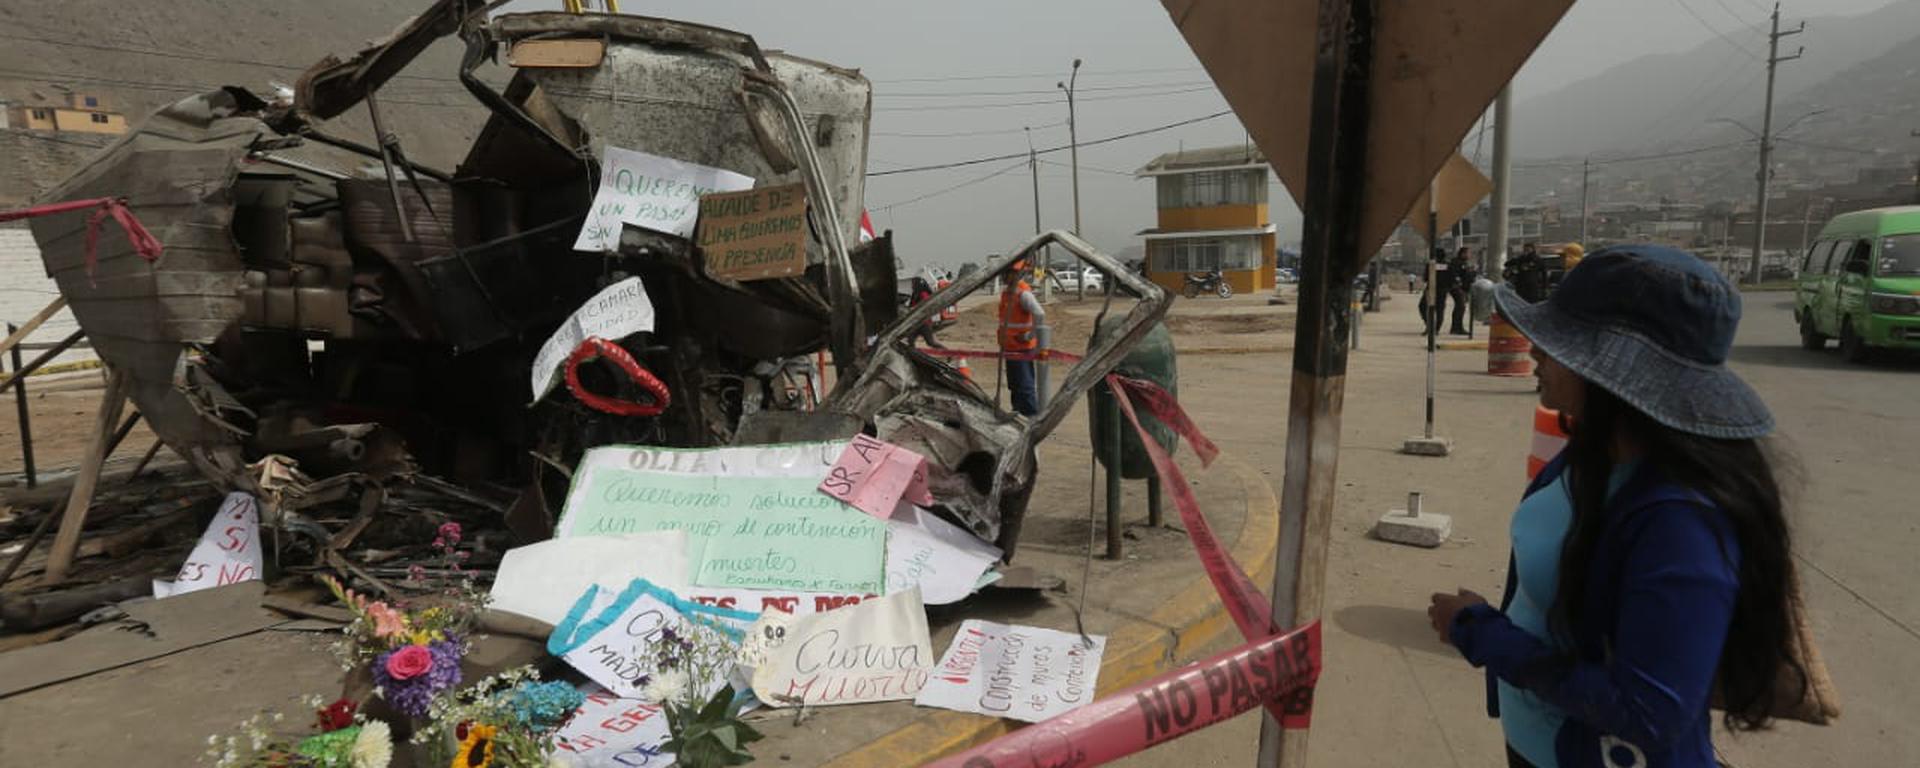 La curva mortal de Pasamayito: Municipalidad de Lima no cerró la vía pese a accidentes y advertencias por su peligroso estado | INFORME